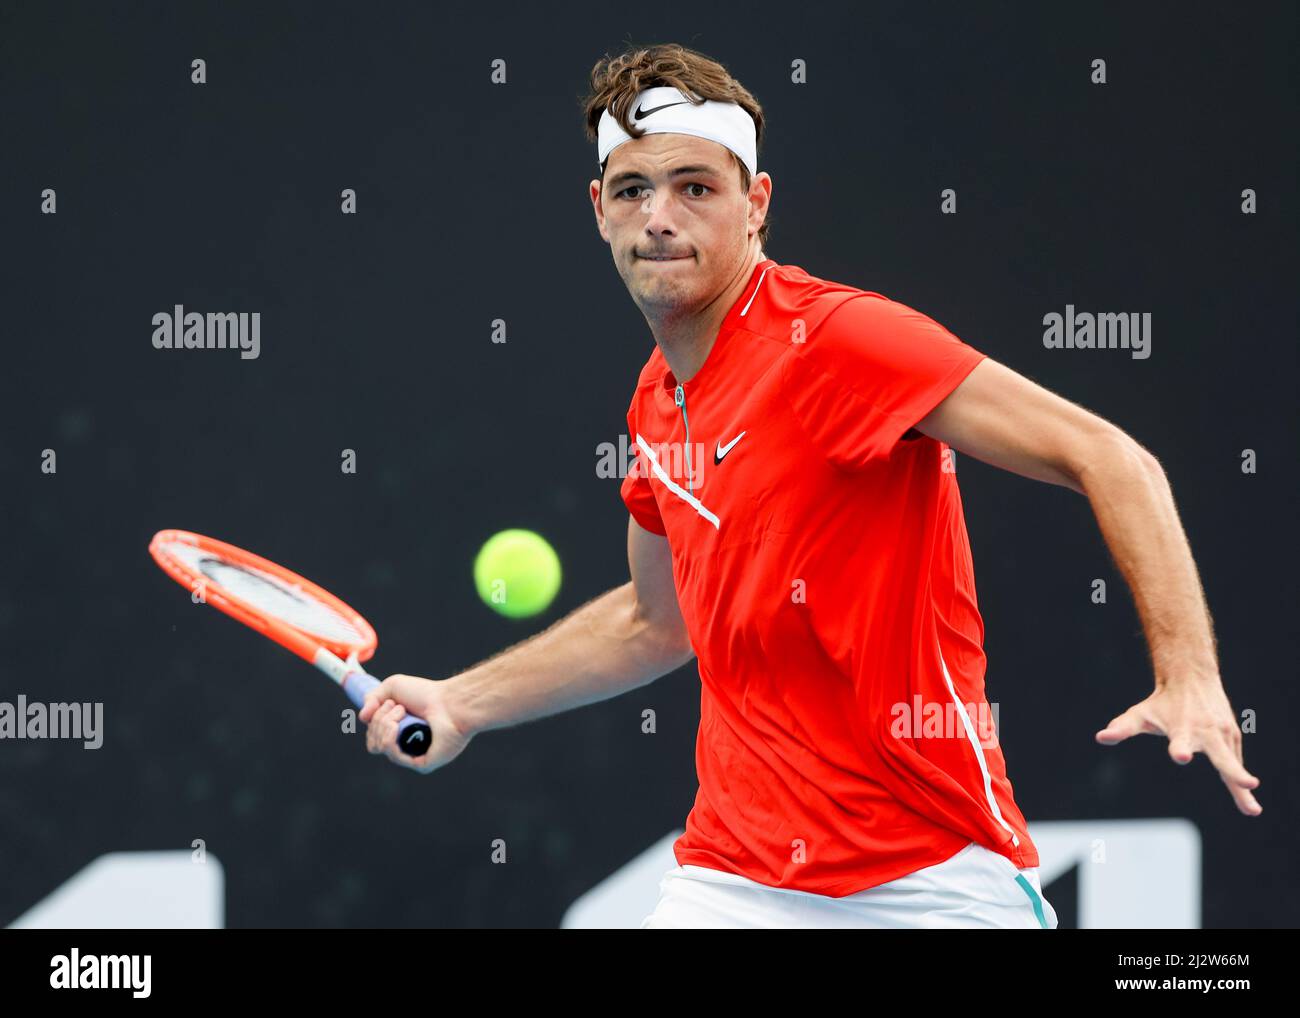 Der amerikanische Tennisspieler Taylor Fritz spielt beim Australian Open 2022 Turnier, Melbourne Park, Melbourne, Victoria, Australien, mit Vorhand Stockfoto